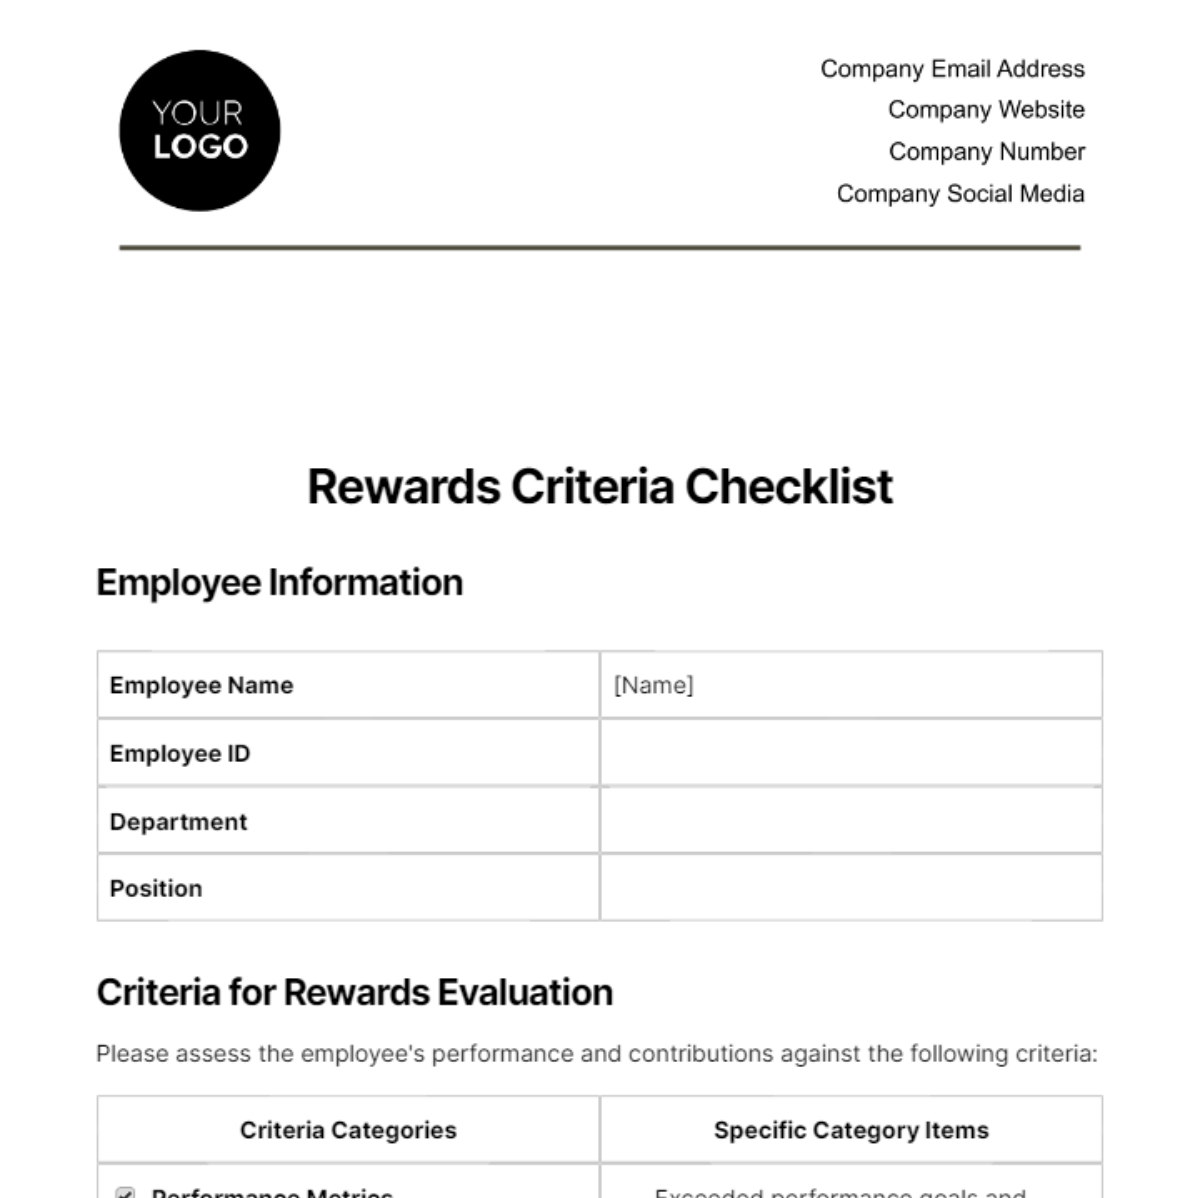 Rewards Criteria Checklist HR Template